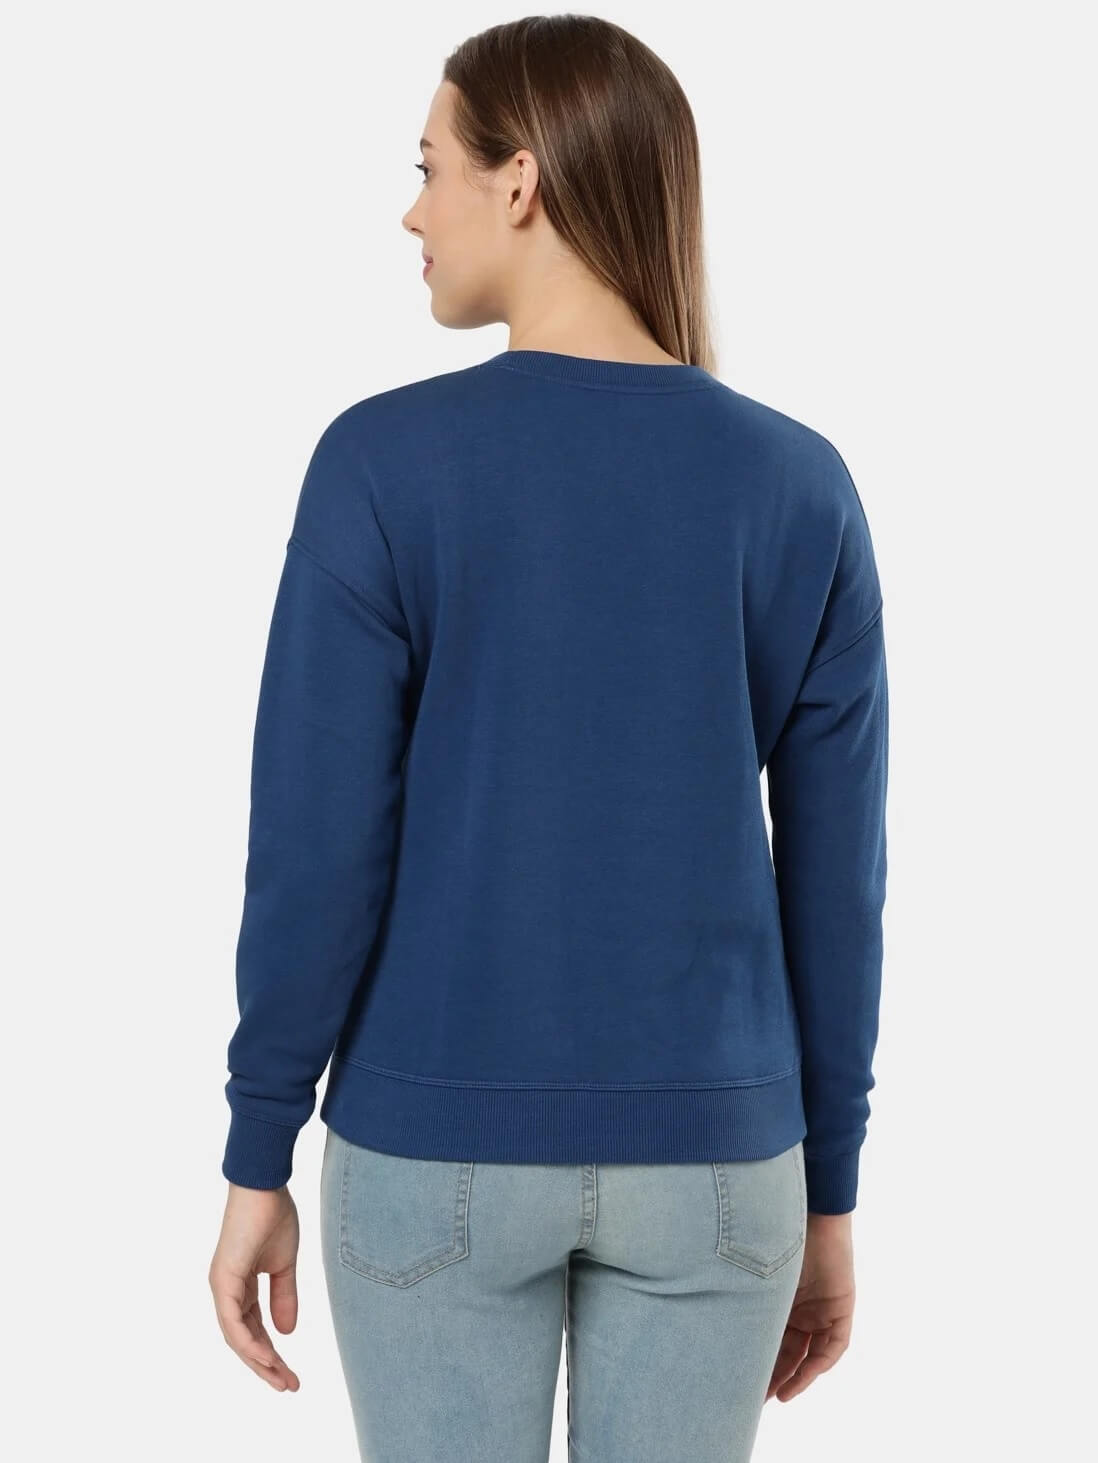 jockey blue sweatshirt for women